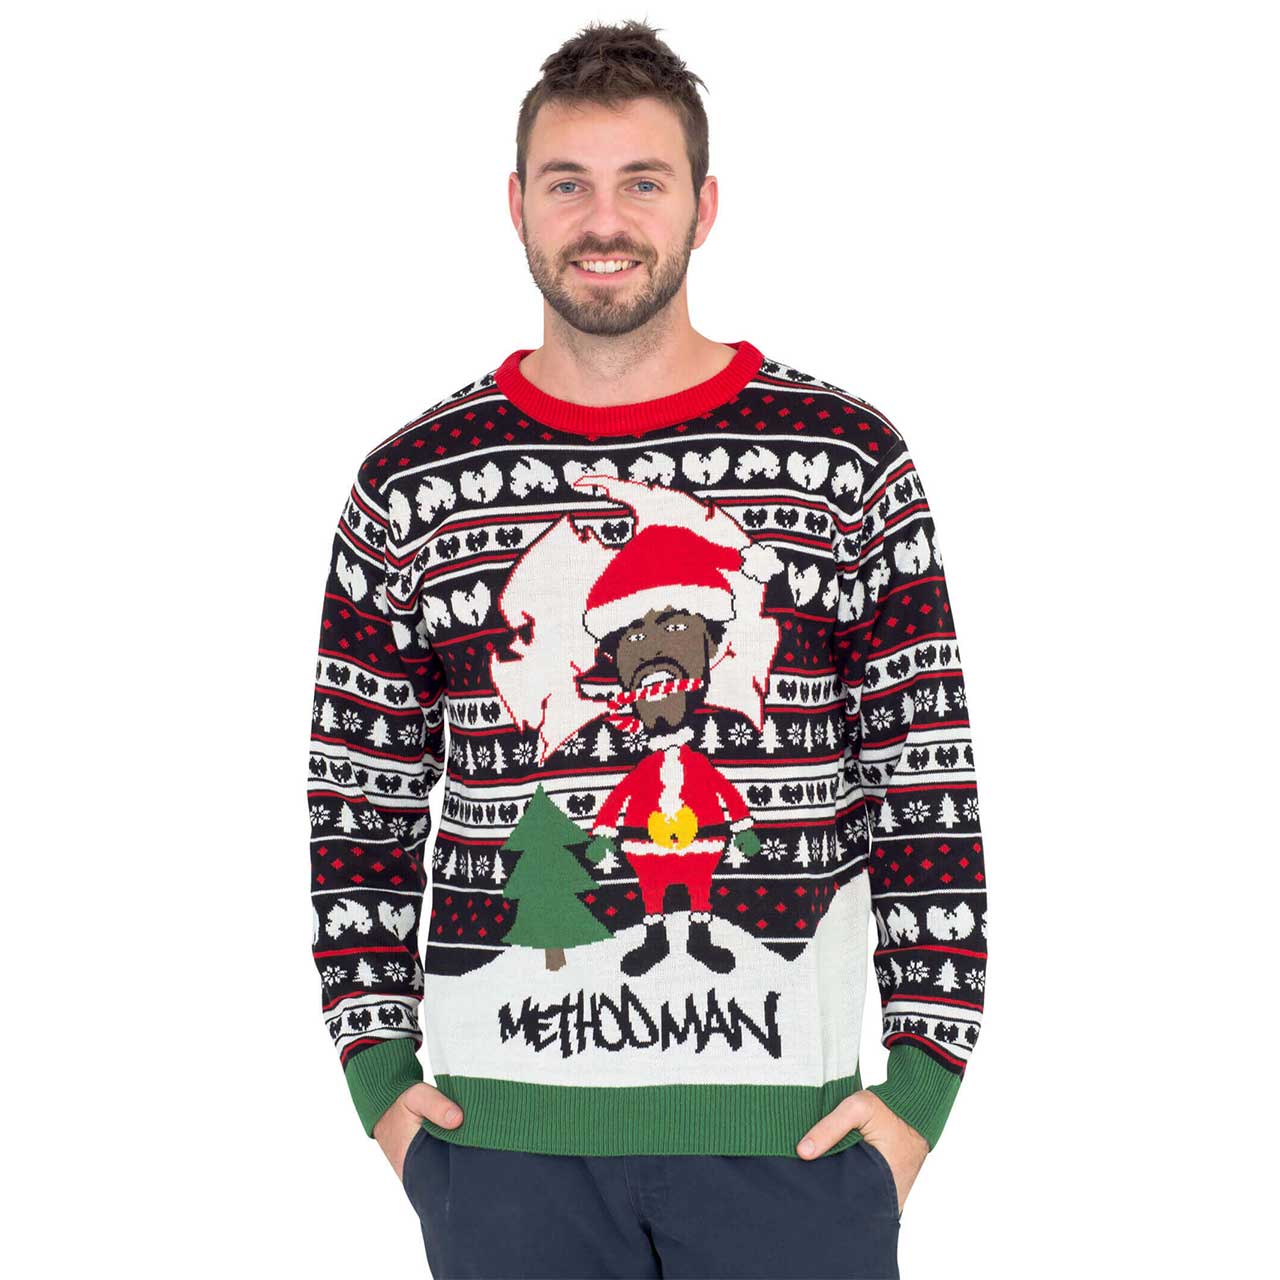 Method Man Ugly Christmas Sweater [UglySweater-MethodMan]